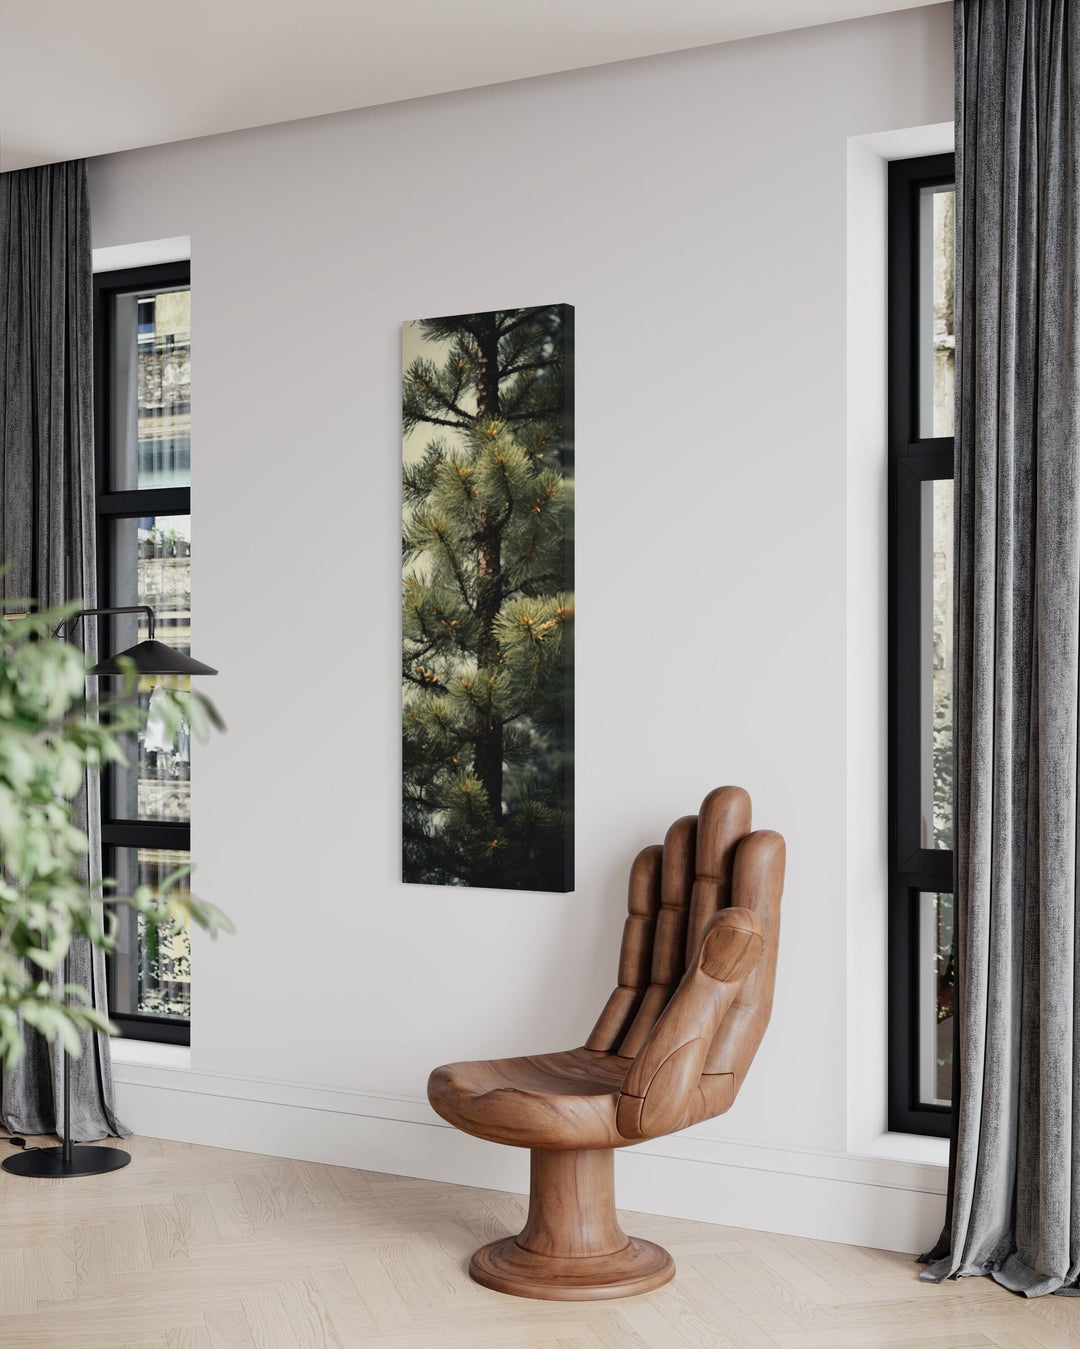 Tall Narrow Fir Tree Forest Vertical Wall Art in living room